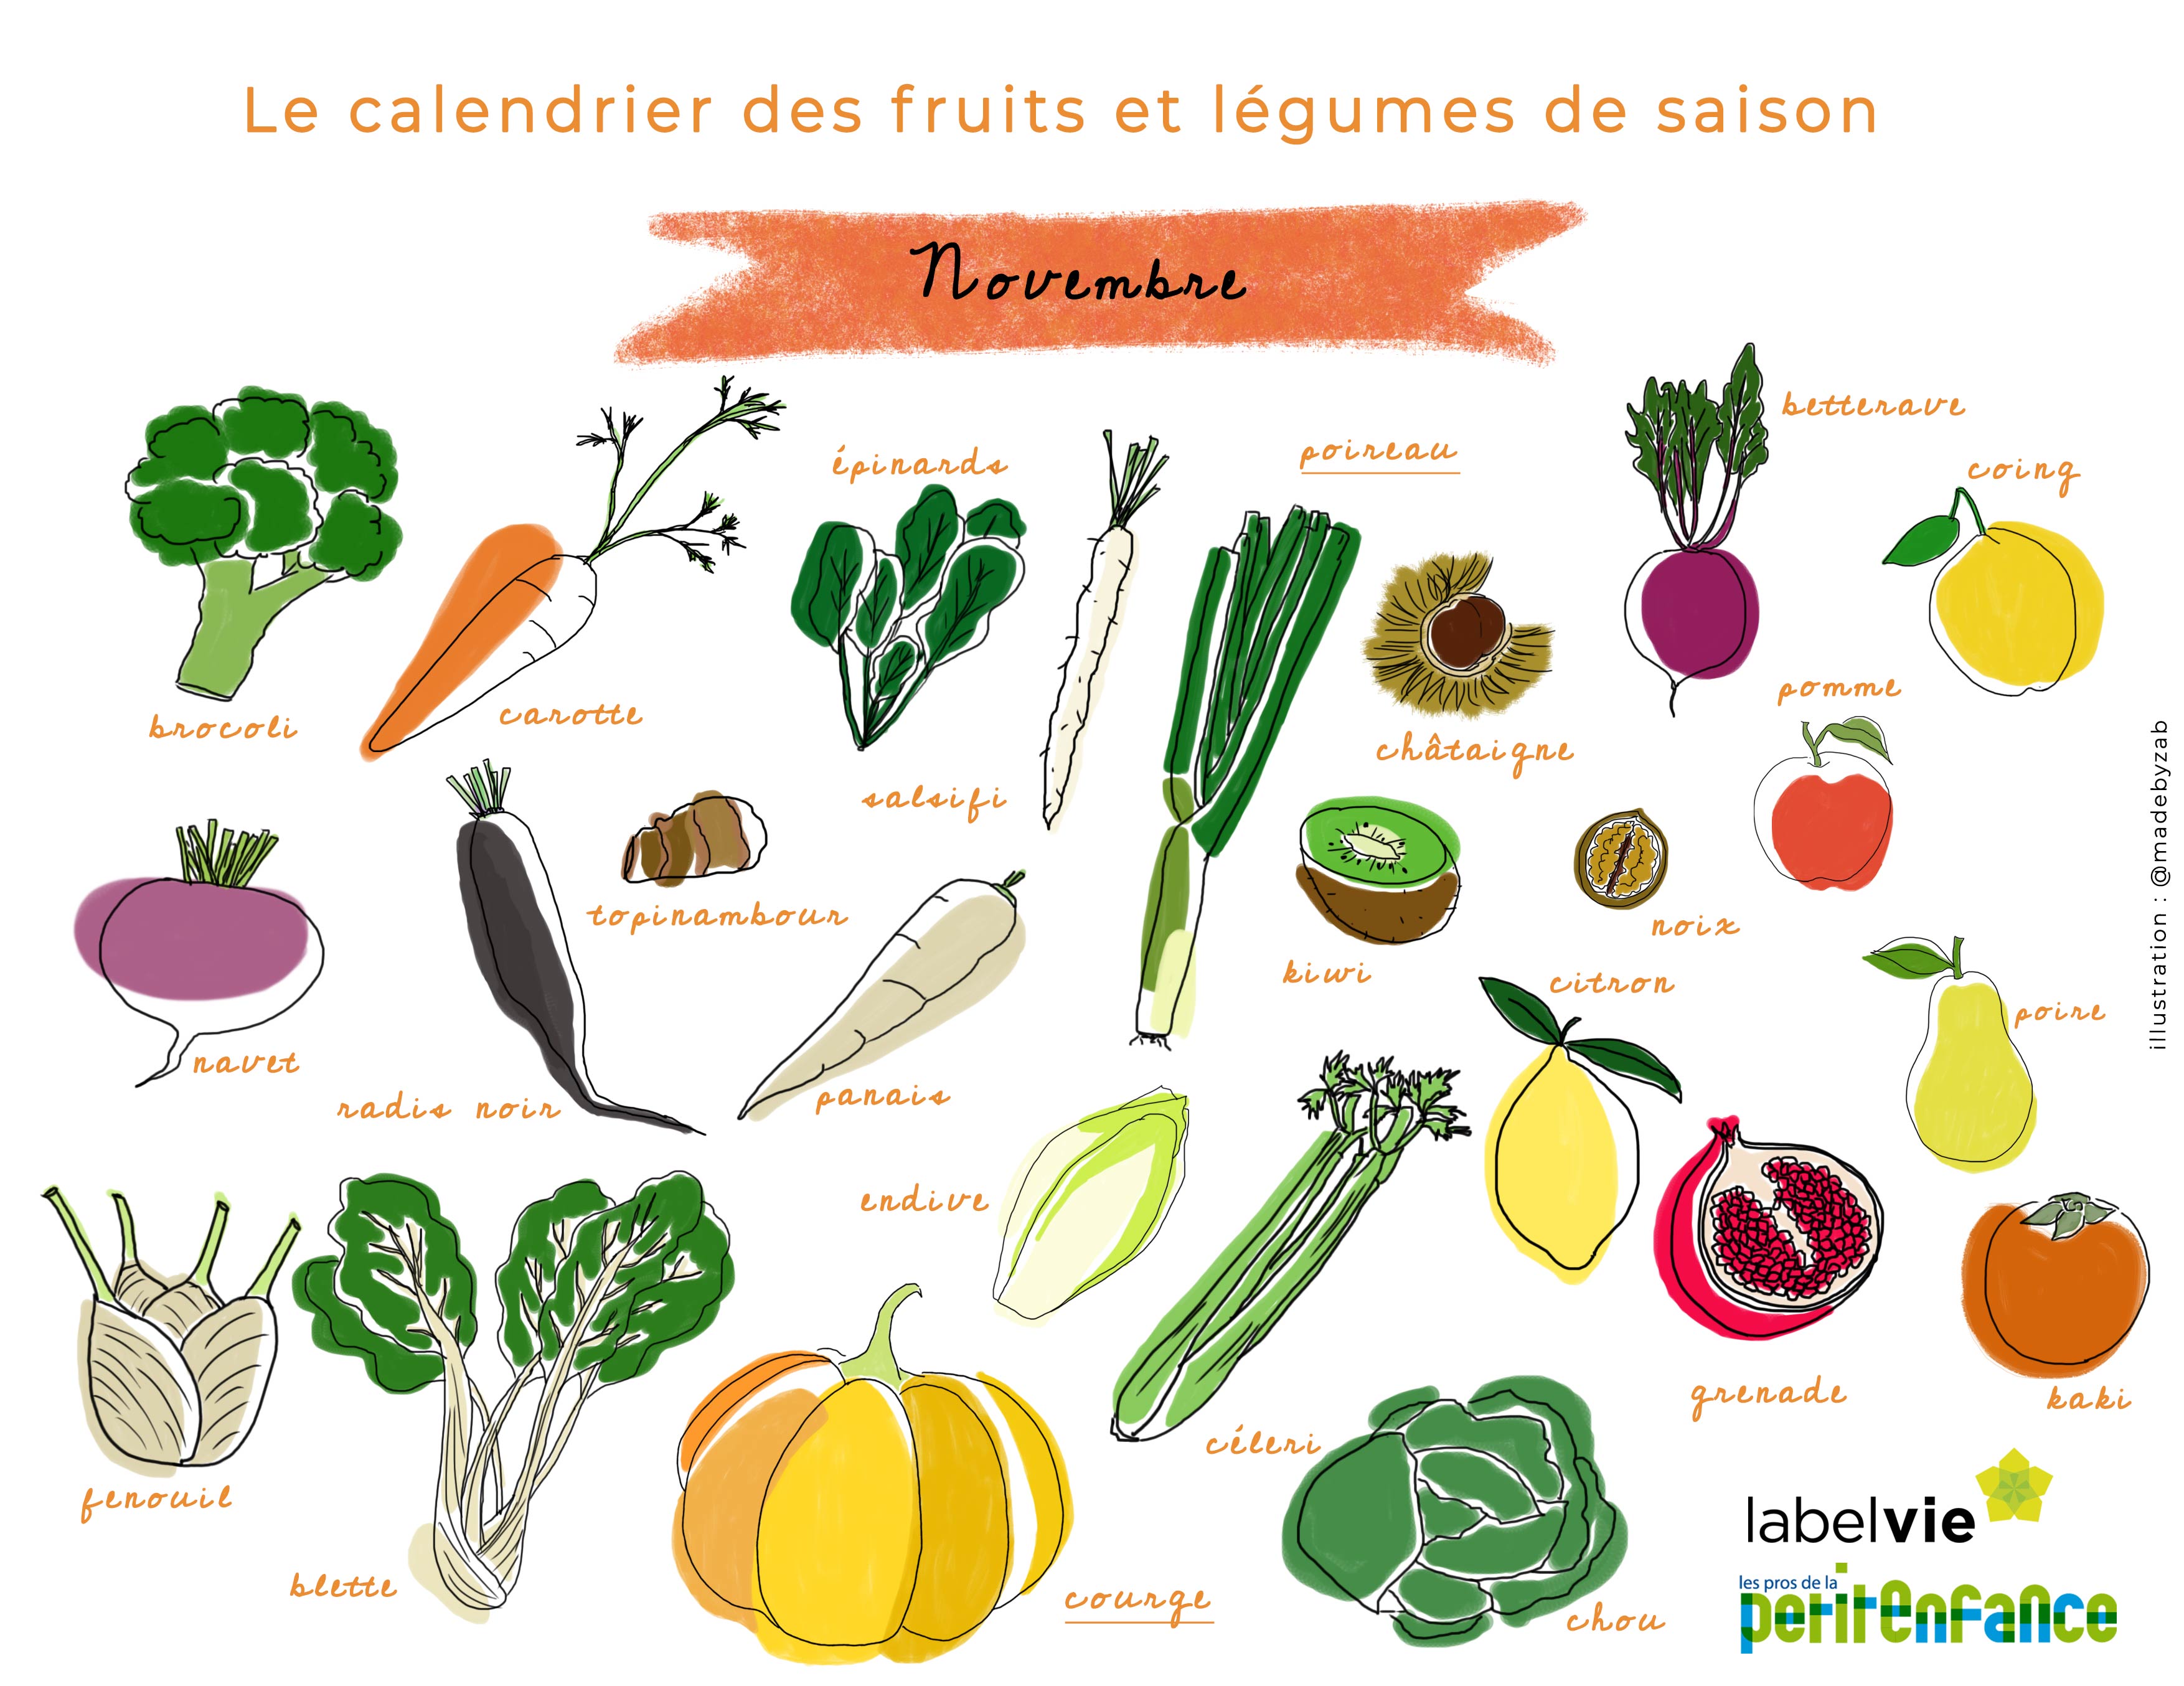 Le calendrier des fruits et légumes de Novembre : courge et poireau à  l'honneur !